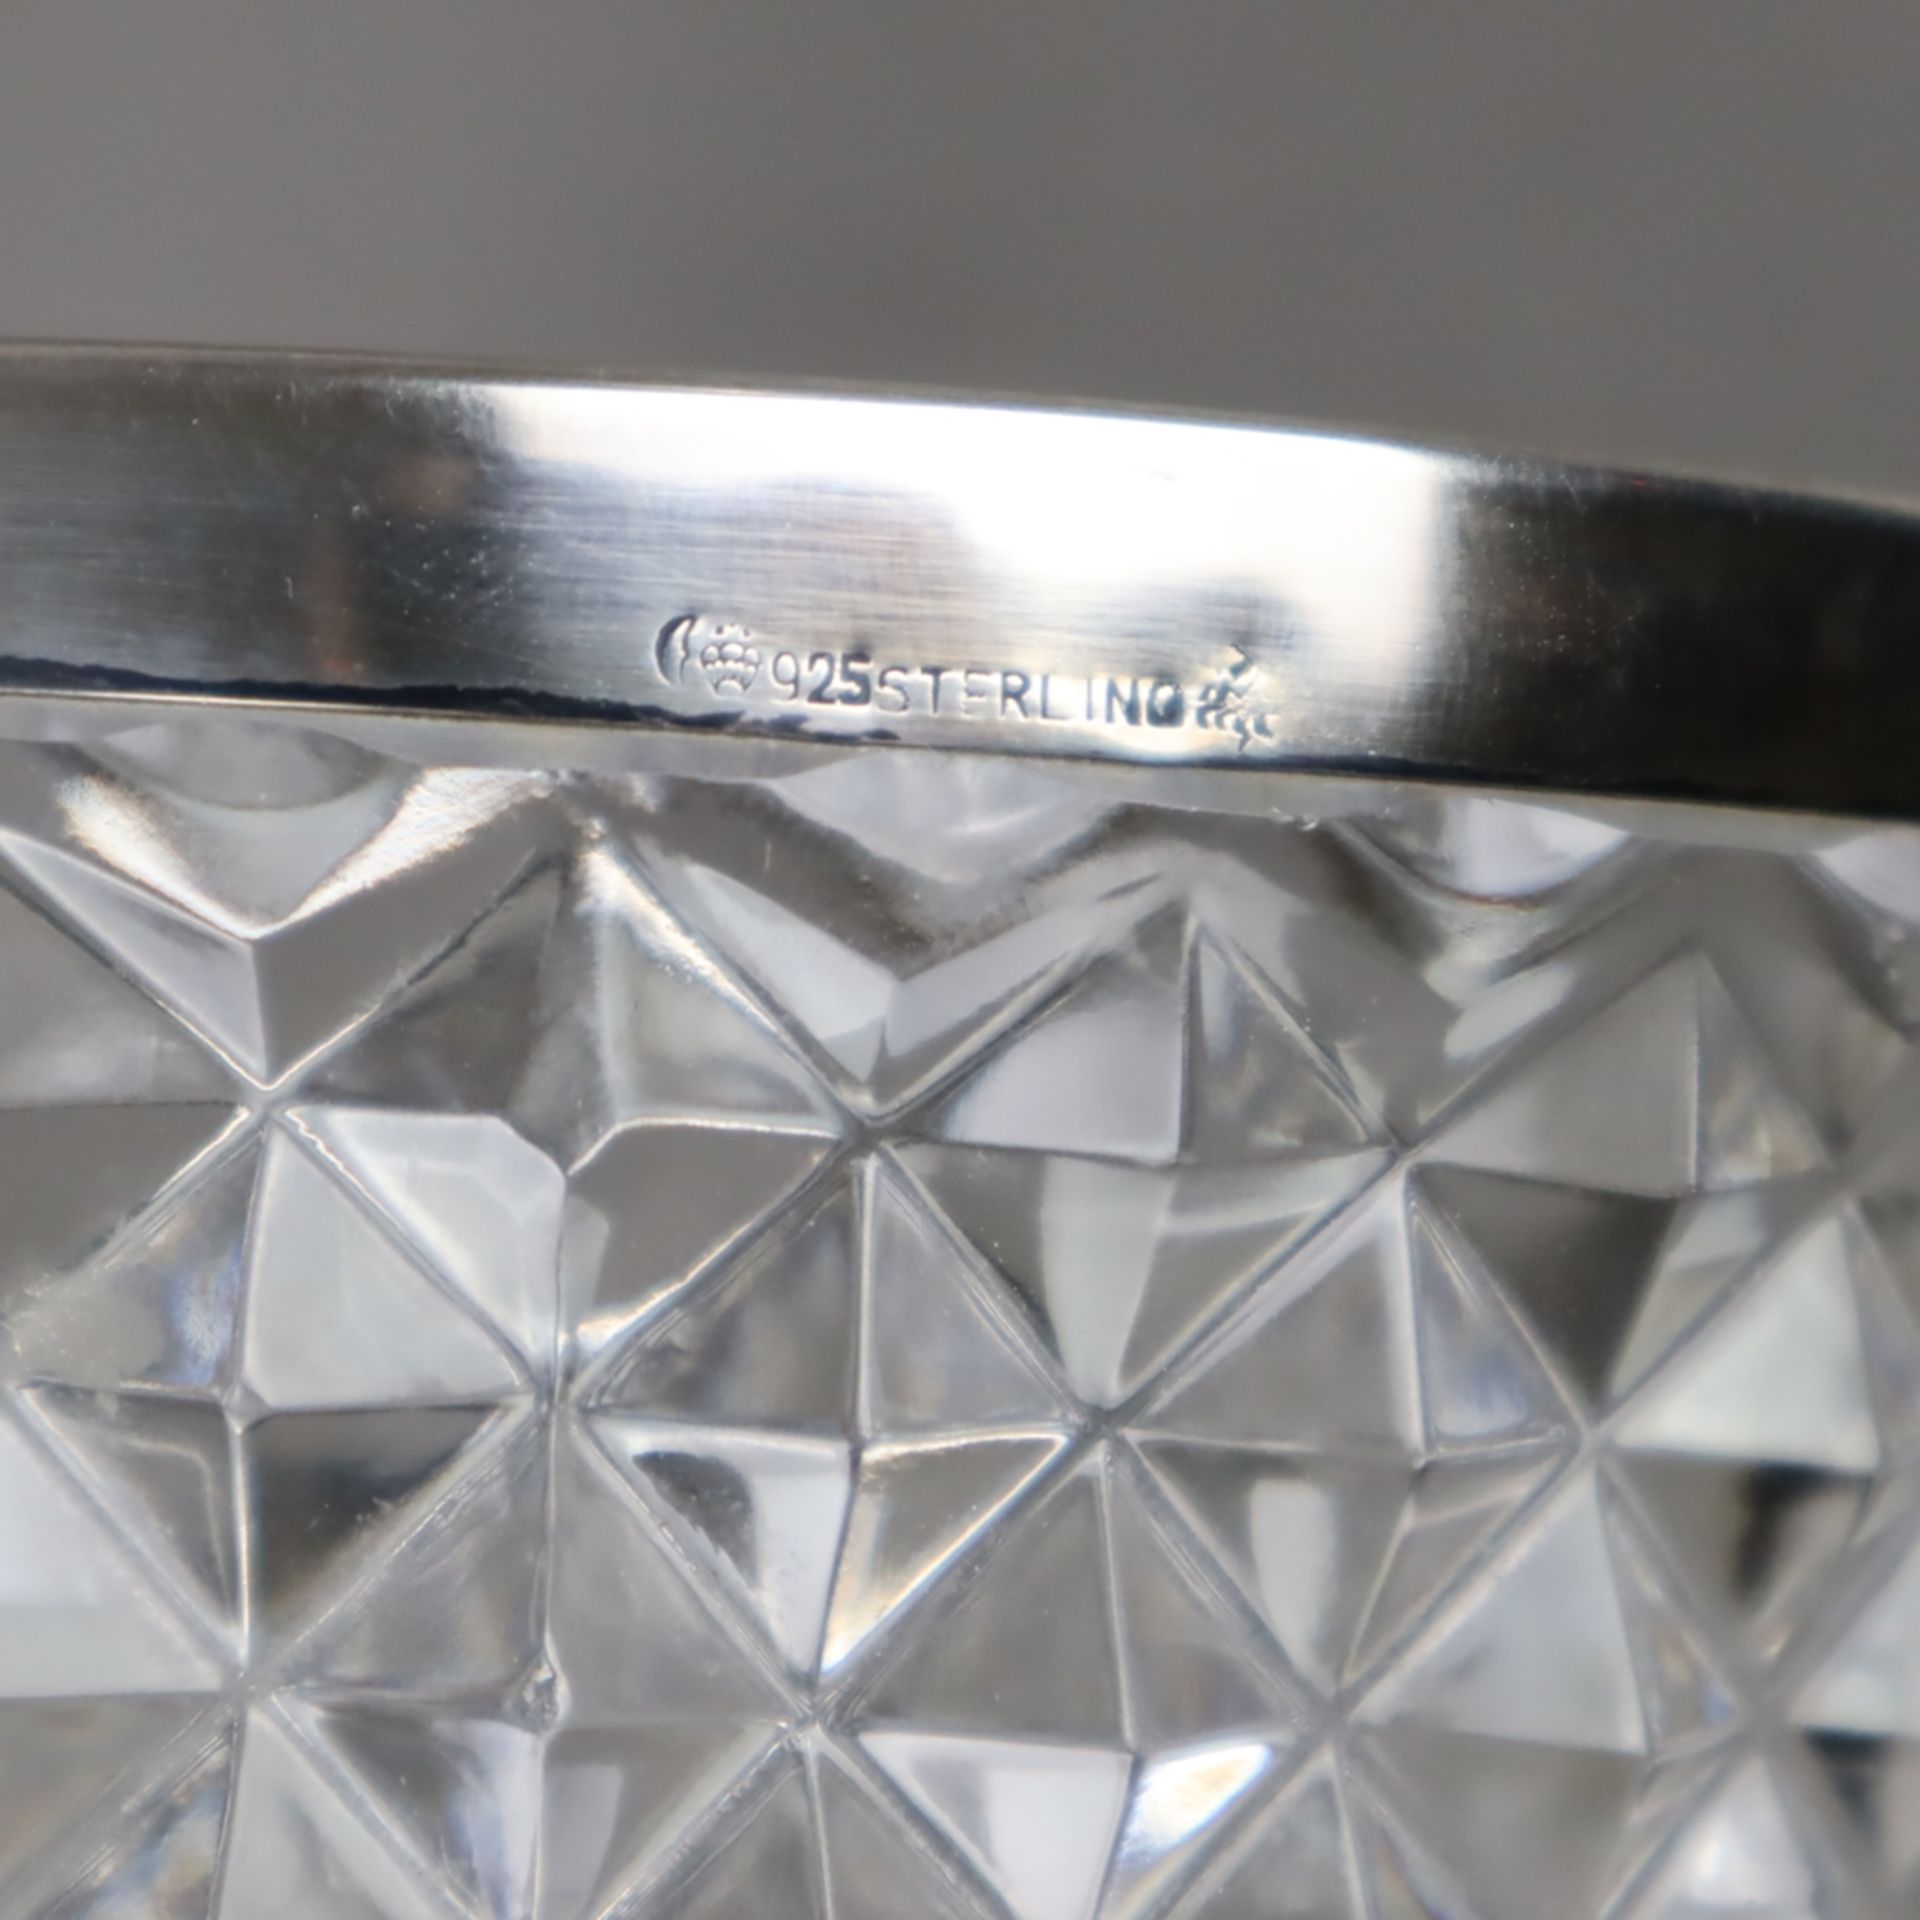 Glasvase mit Silbermontur - farblose Kristallvase mit Diamantschliff und glattem Sterlingsilber-Ran - Bild 5 aus 6